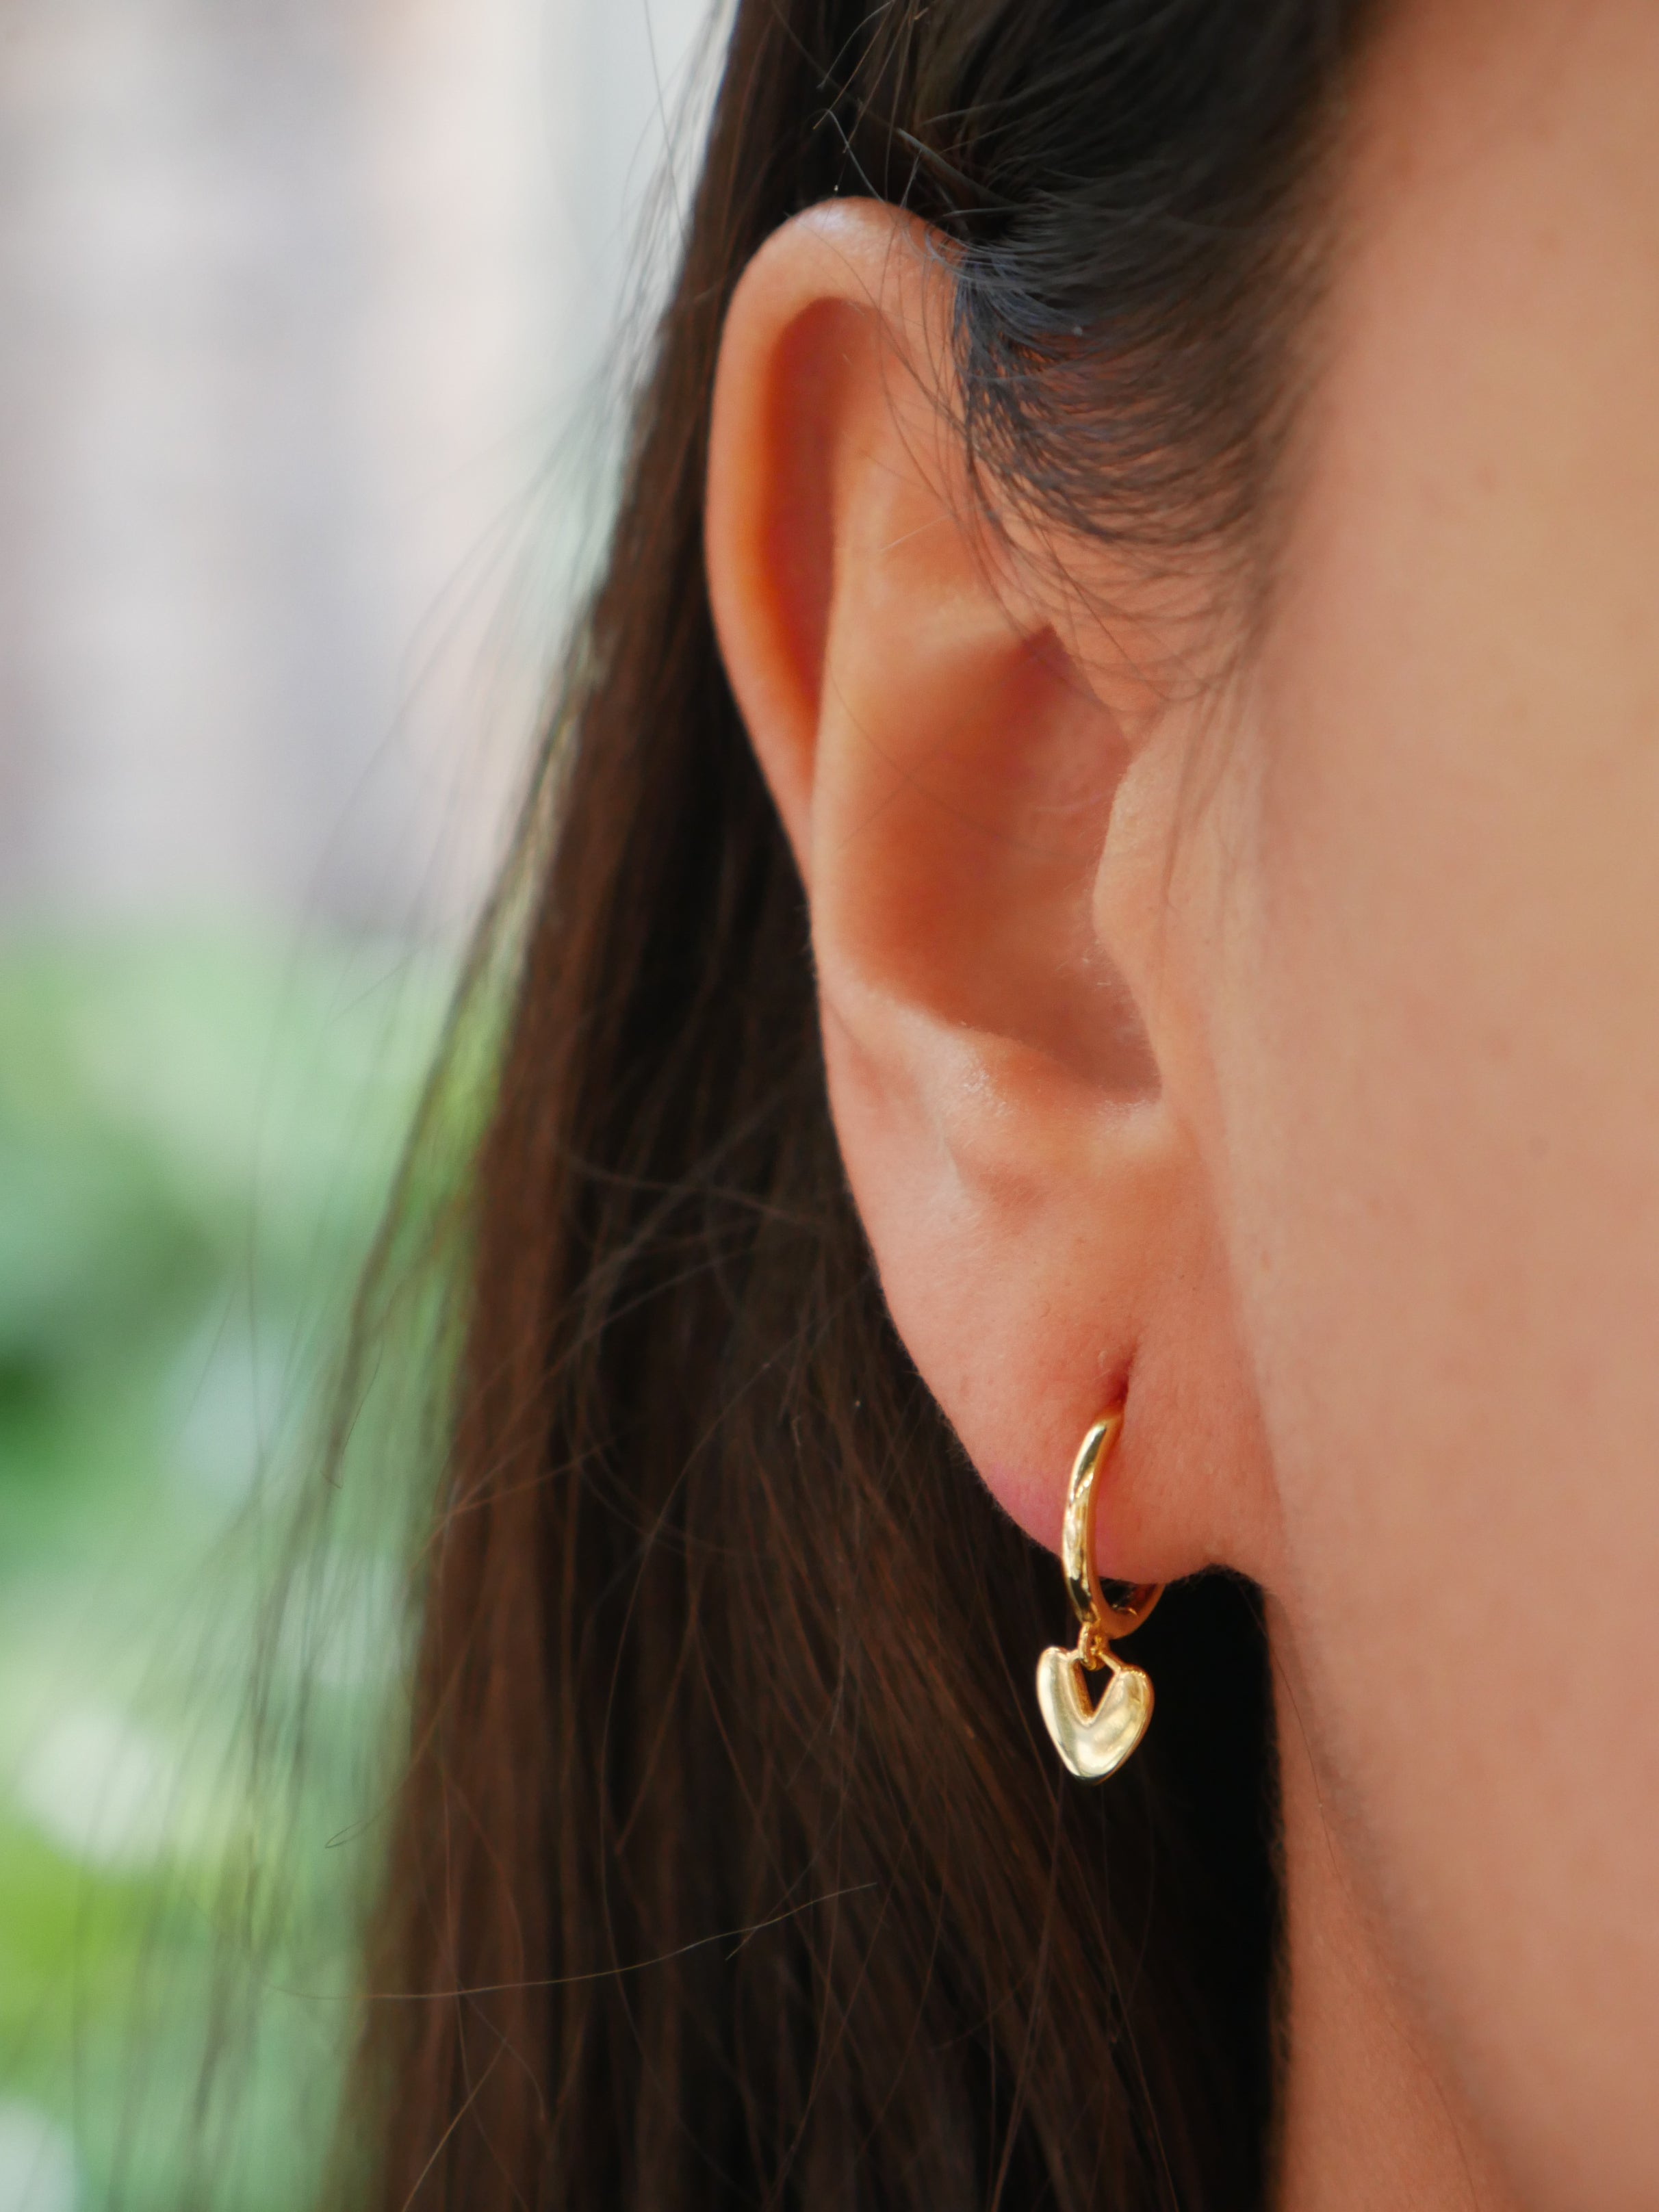 Lightning Bolt Earringssmall Hoop Earrings With Charm dainty Gold Earrings  Gift for Best Friend Sister Gift Tiny Hoops - Etsy Australia | Hoop  earrings small, Dainty gold earrings, Lightning bolt earrings